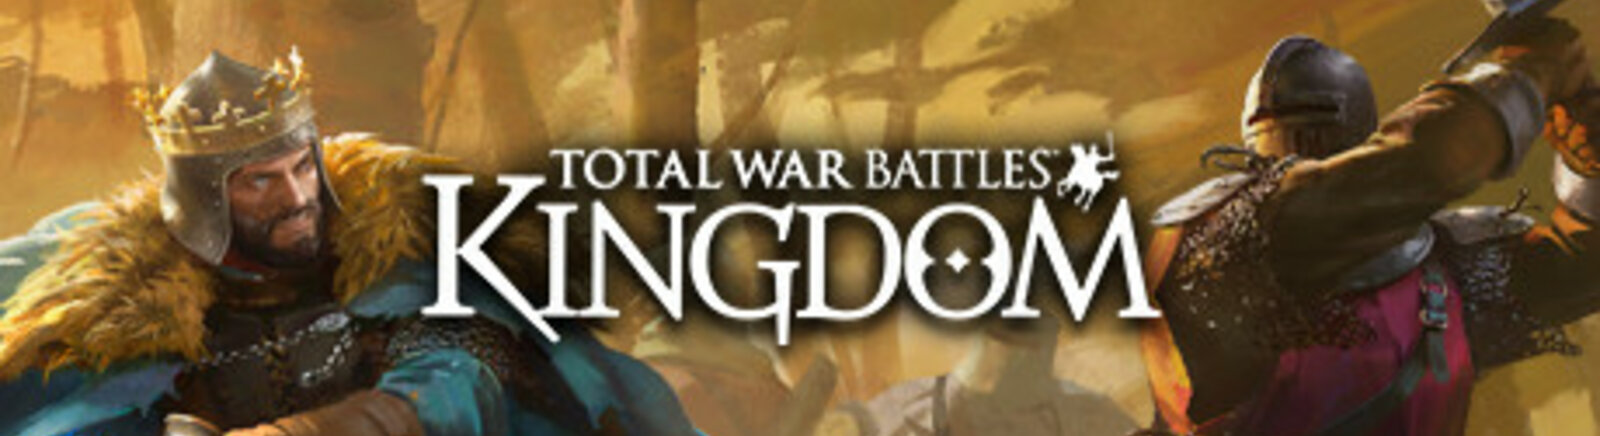 Дата выхода Total War Battles: Kingdom  на PC, iOS и Android в России и во всем мире